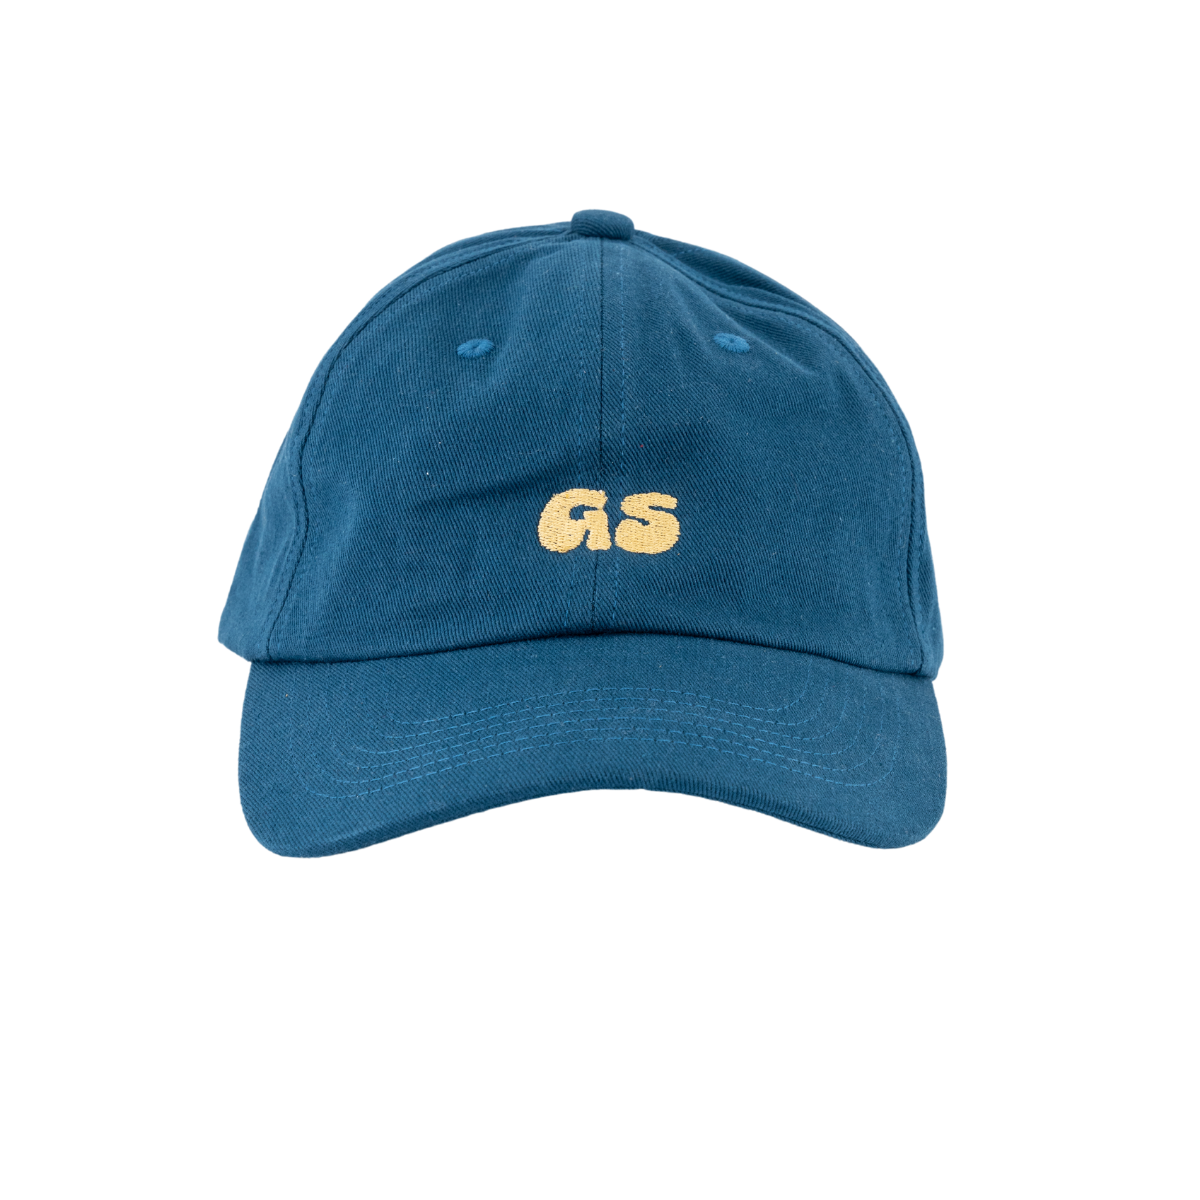 GS yellow |  Navy / Cap